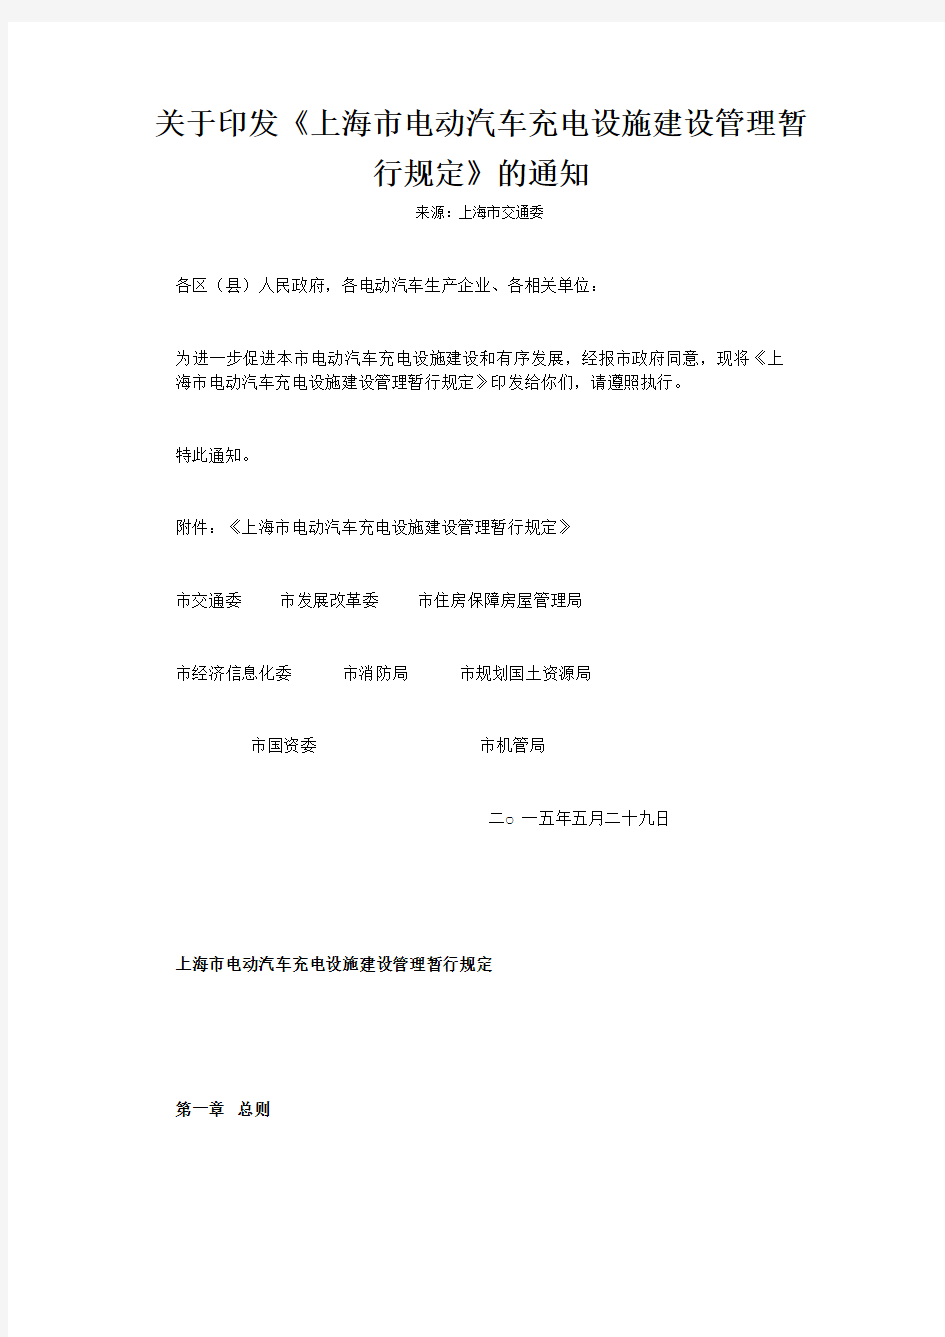 上海电动汽车充电设施建设管理暂行规定